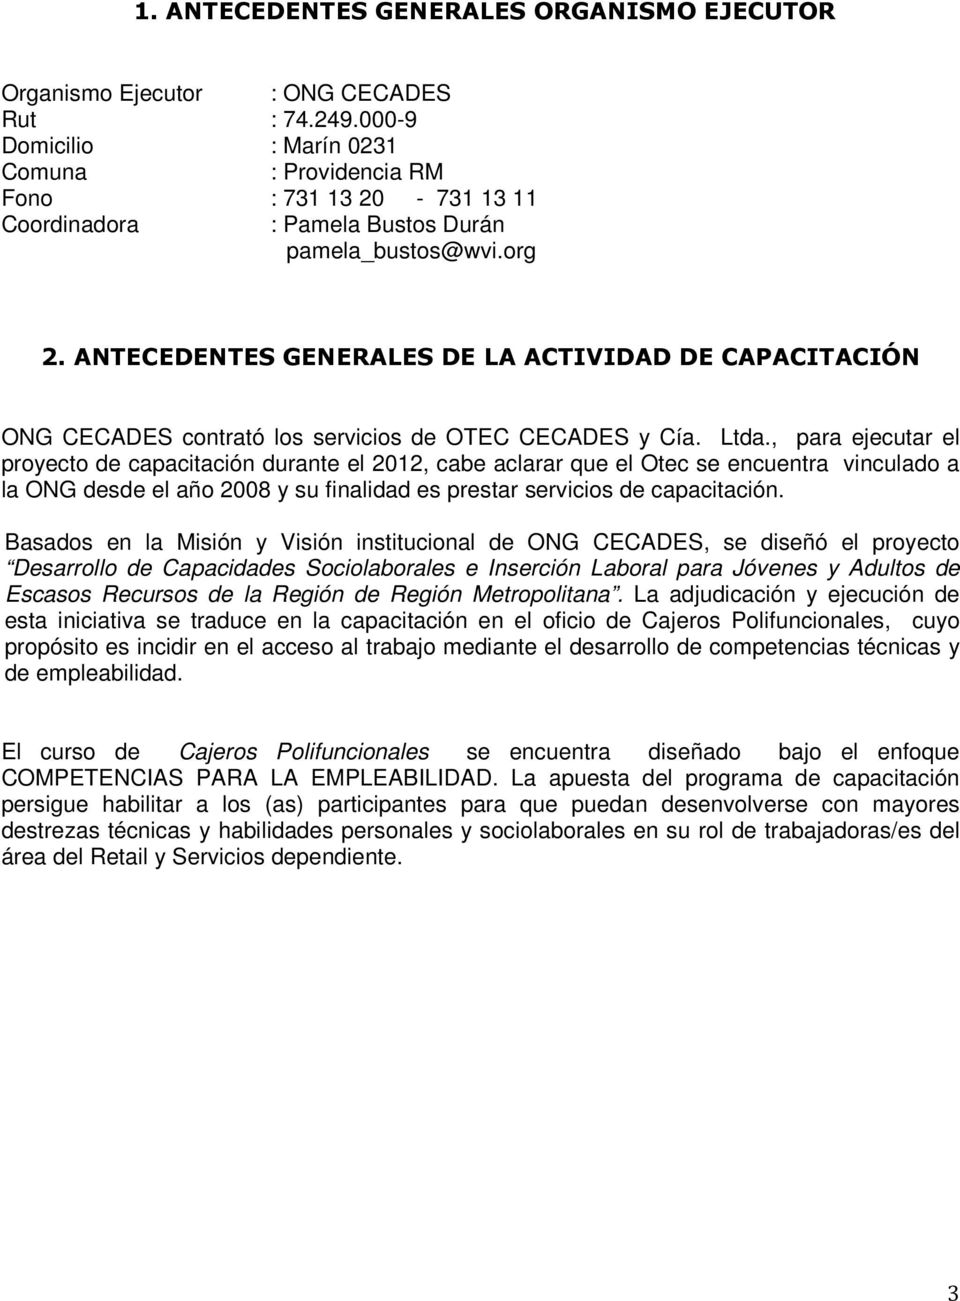 ANTECEDENTES GENERALES DE LA ACTIVIDAD DE CAPACITACIÓN ONG CECADES contrató los servicios de OTEC CECADES y Cía. Ltda.